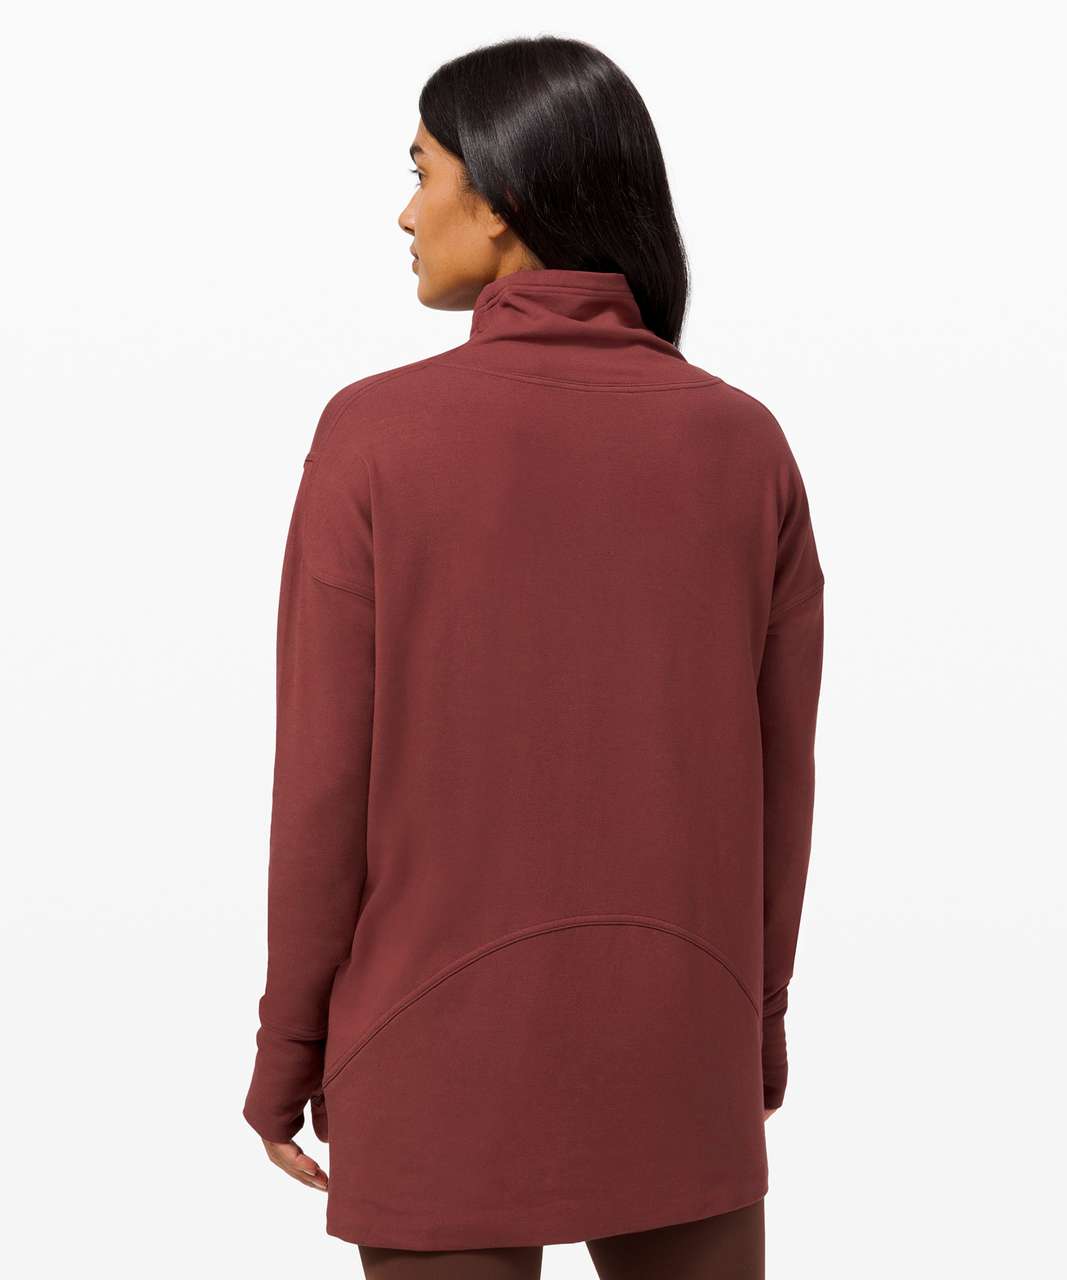 Will velvet hangers stretch out the neck? : r/lululemon